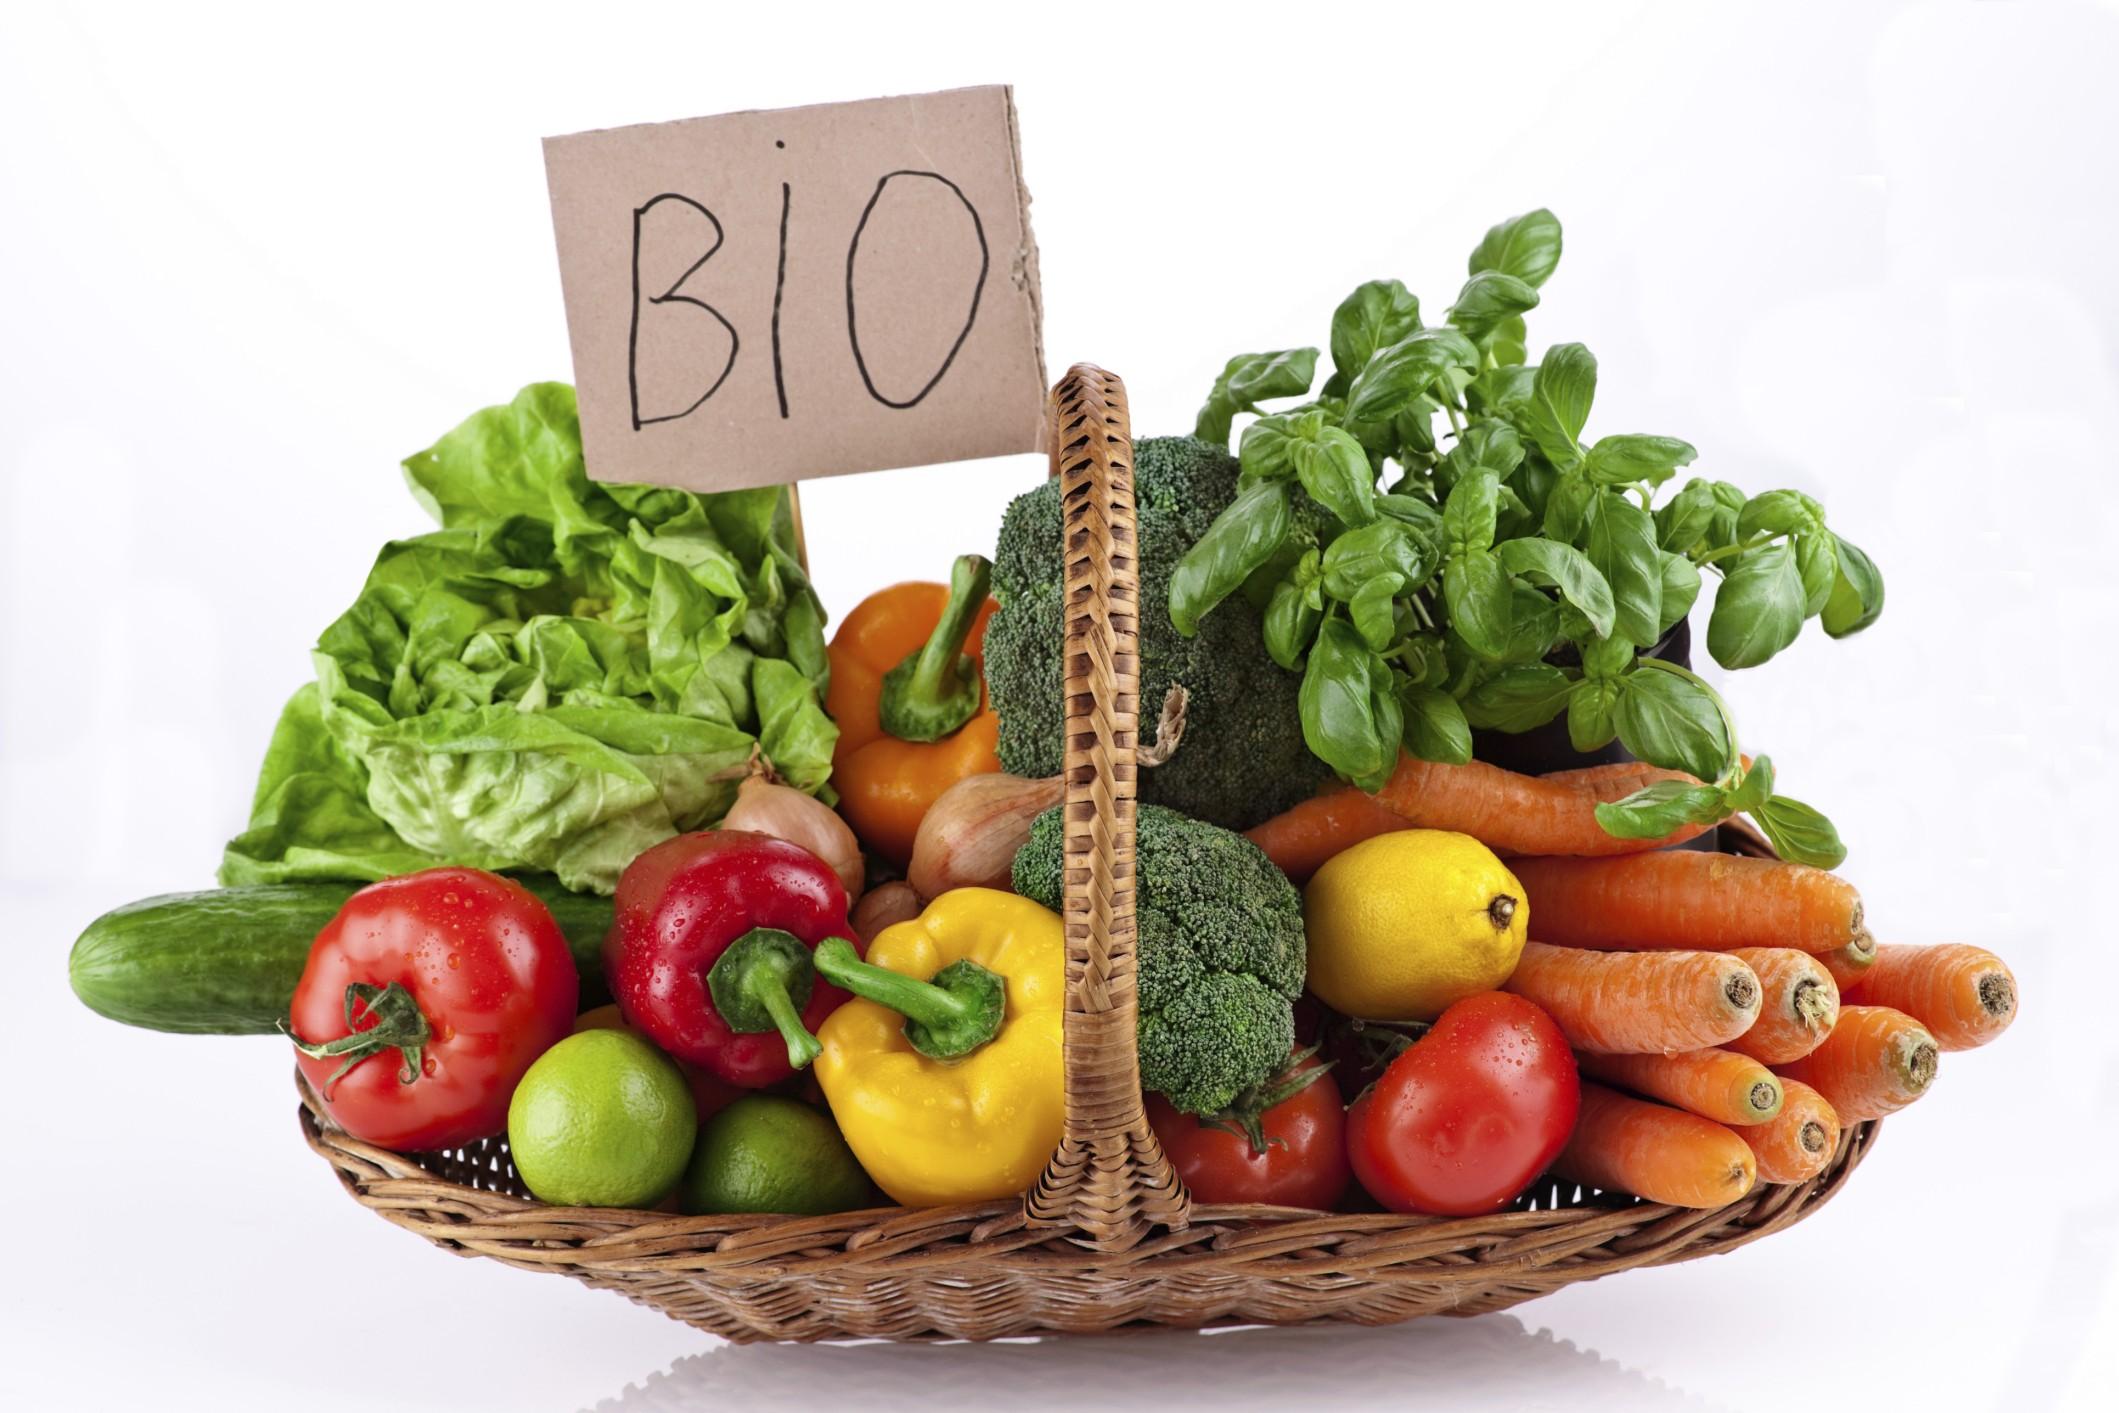 Coltivazioni biologiche in aumento in Italia: cresce la domanda di prodotti bio